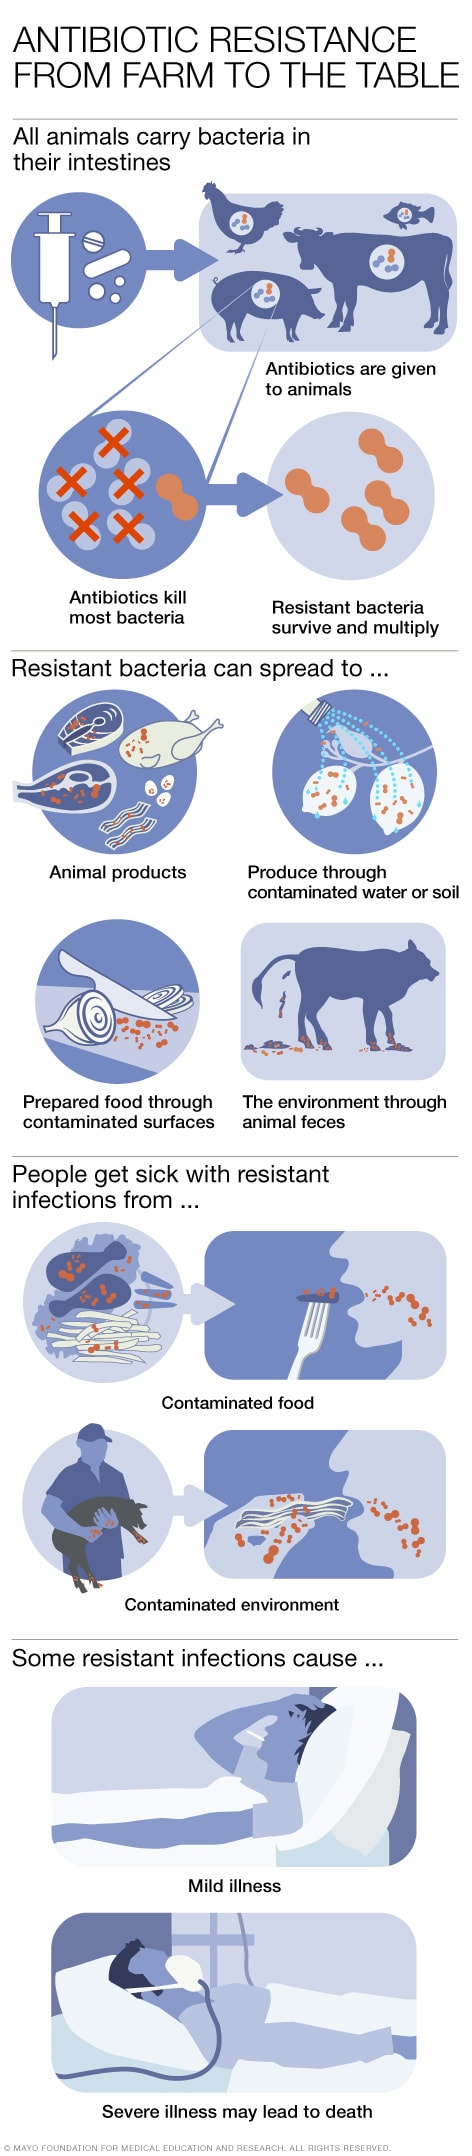 Uso de antibióticos en animales destinados a la producción de alimentos